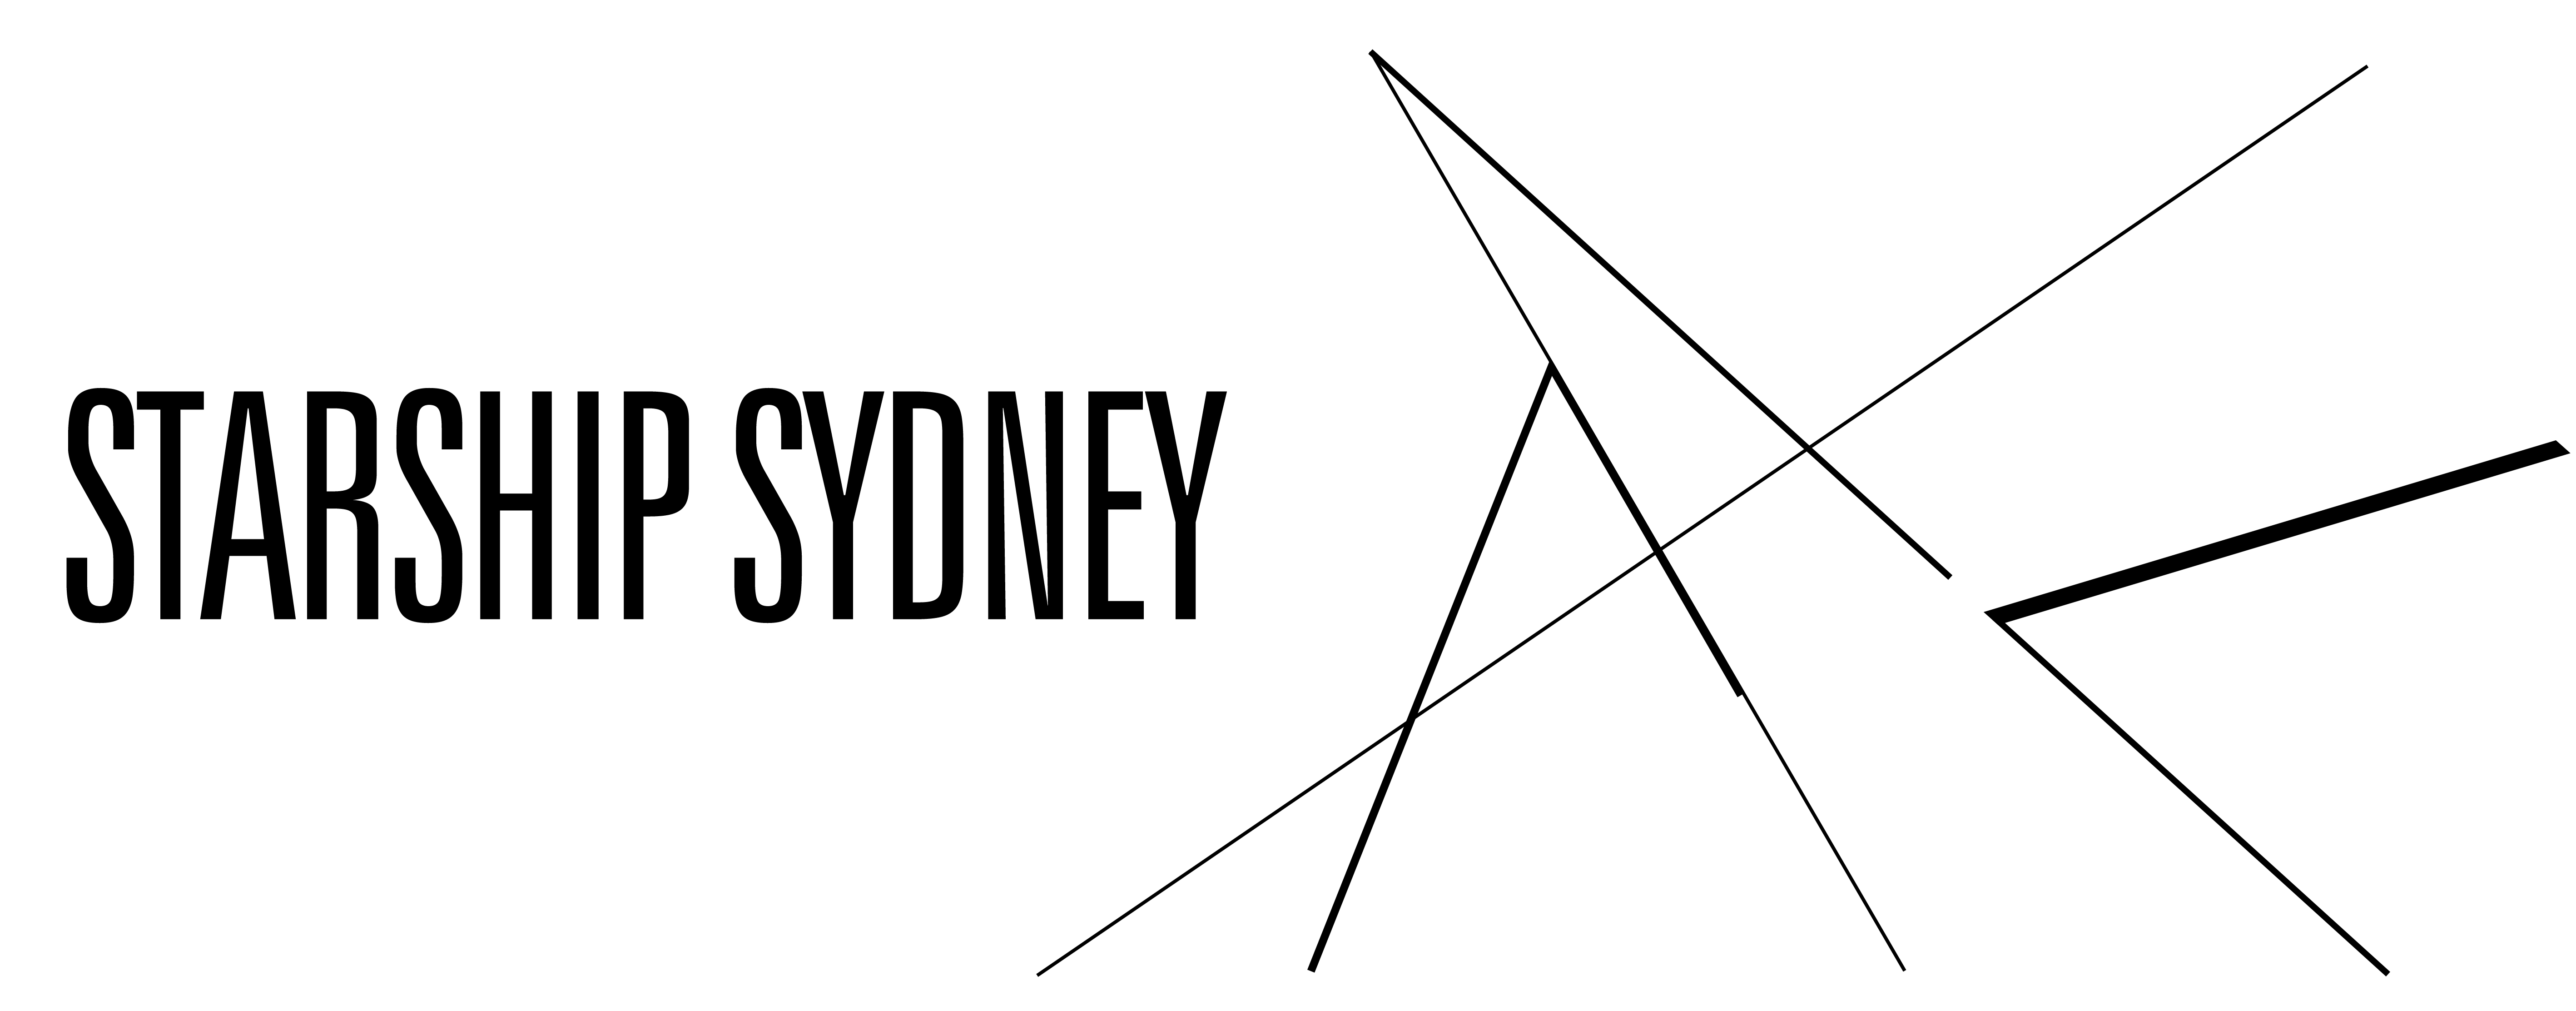 Starship Sydney logo